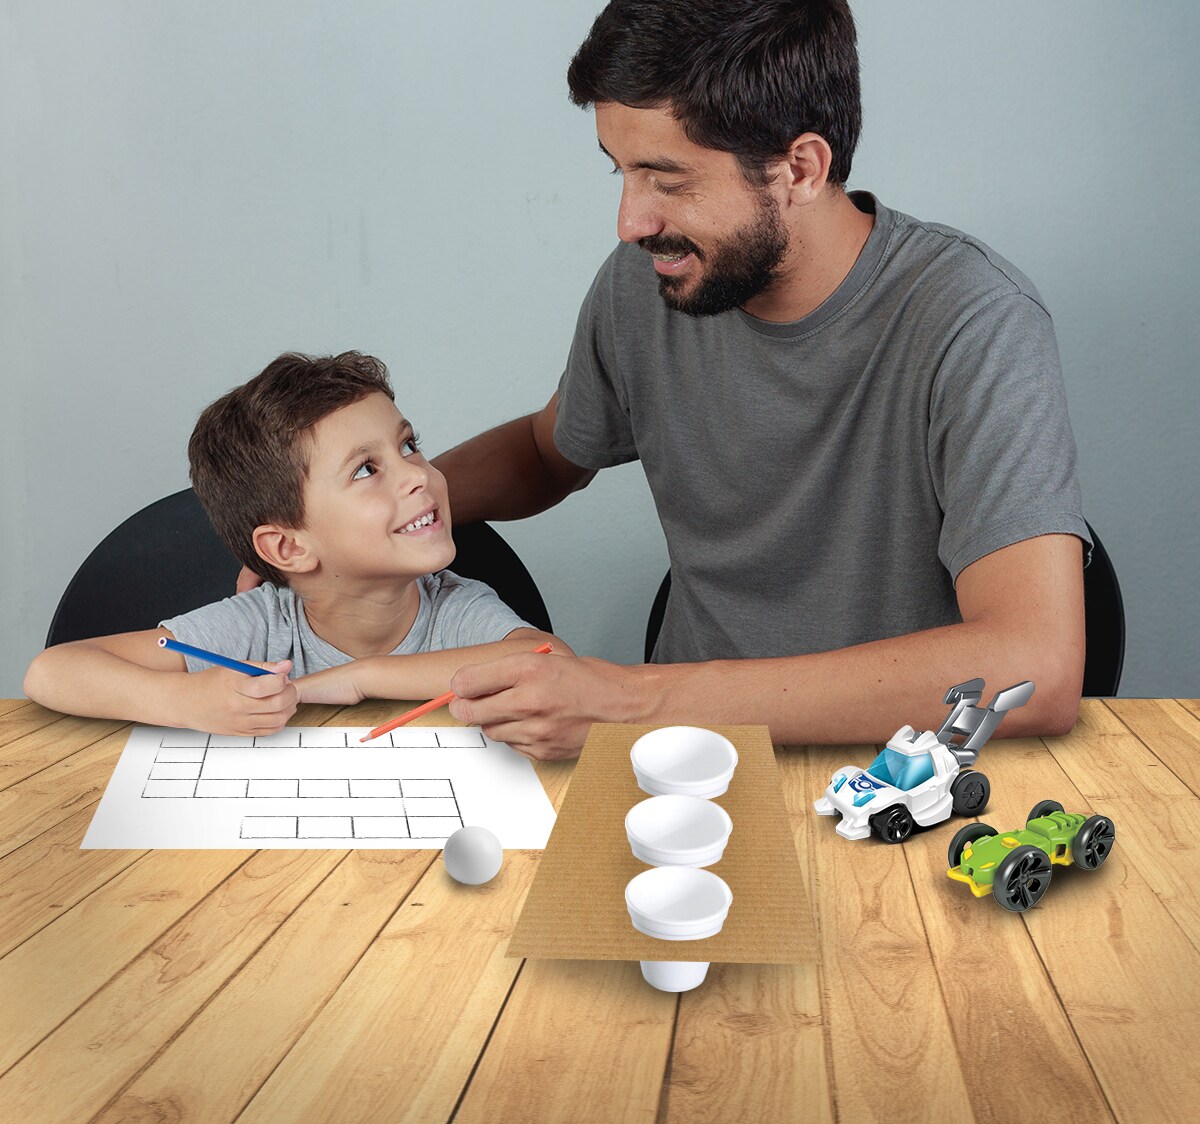 Papá y niño sonrientes haciendo manualidades sobre una mesa.